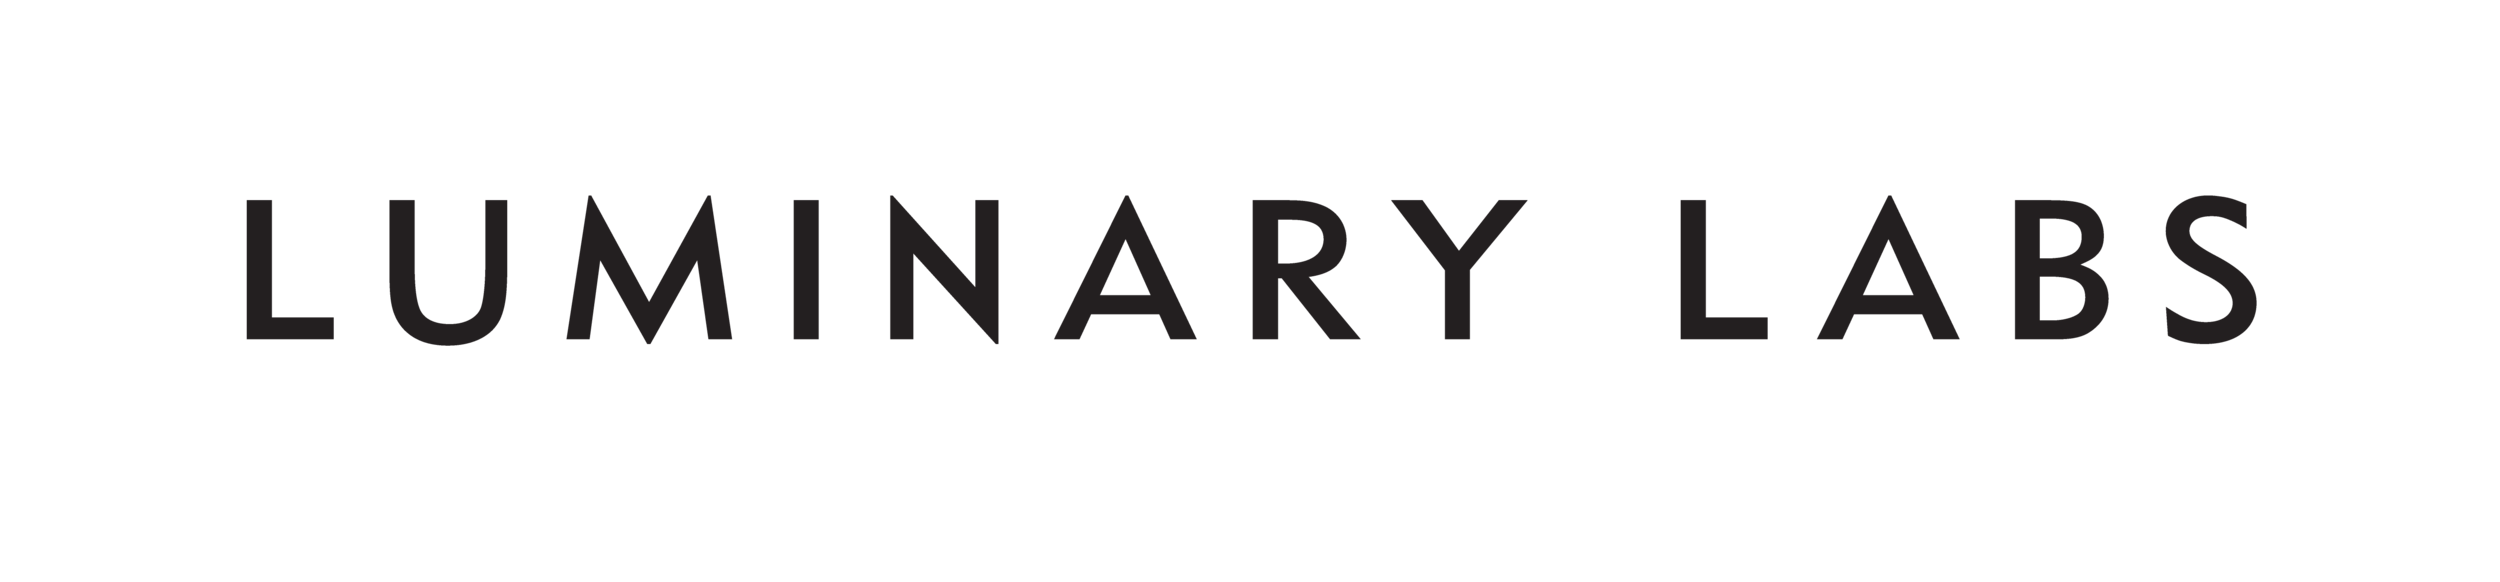 Luminary_Labs_Logo_1.png